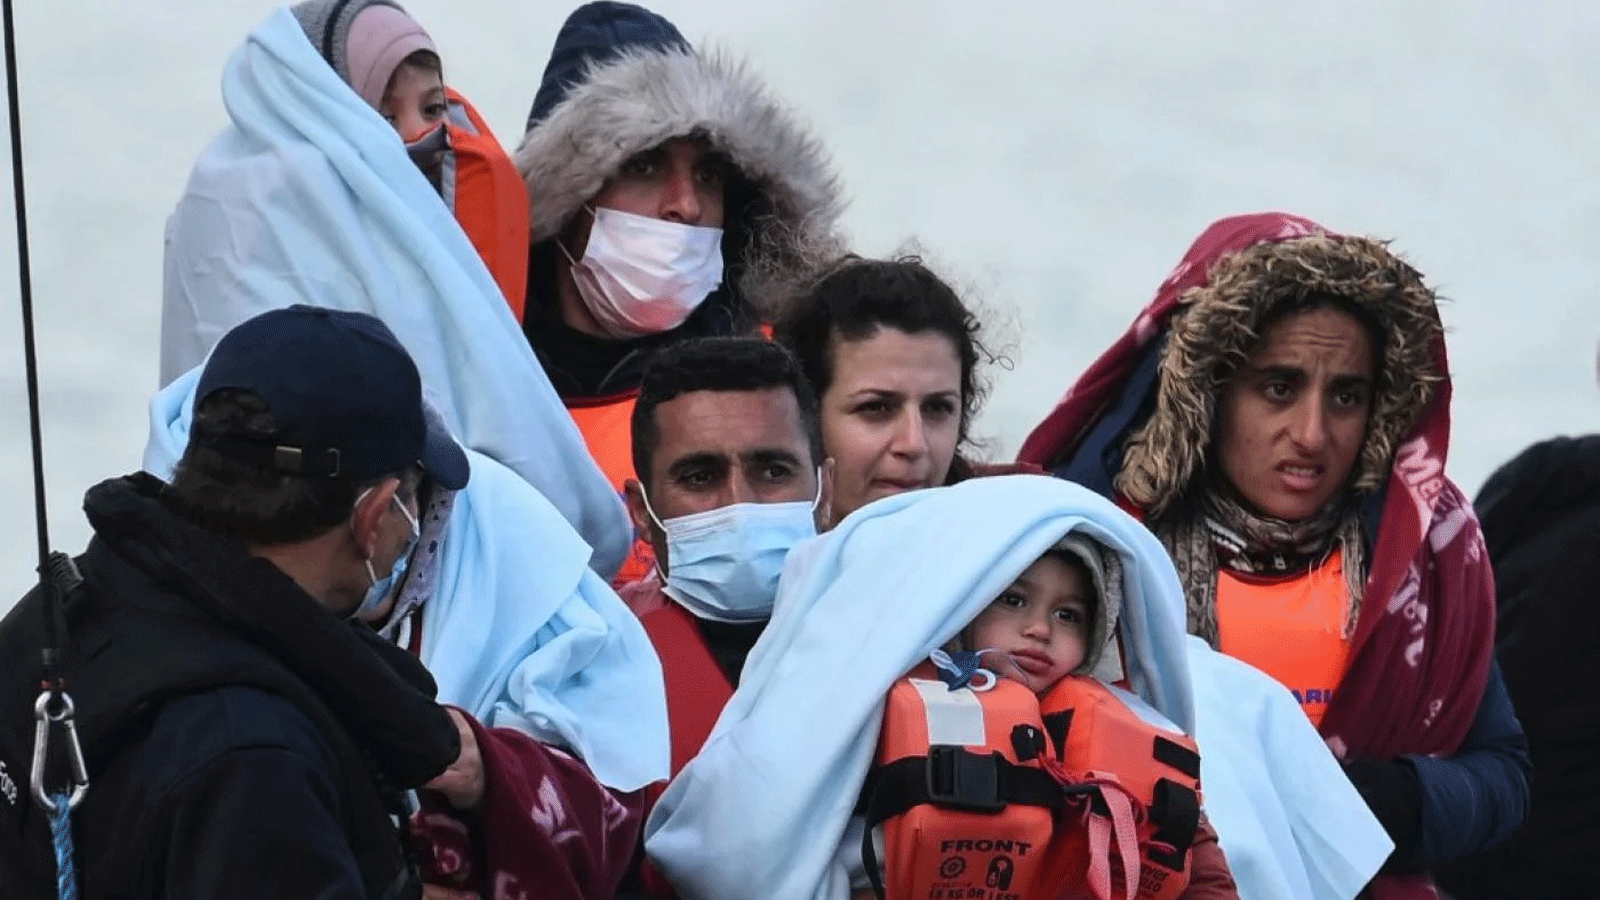 مهاجرون غير شرعيين وصلوا الى دوفر عبر القنال الانكليزي